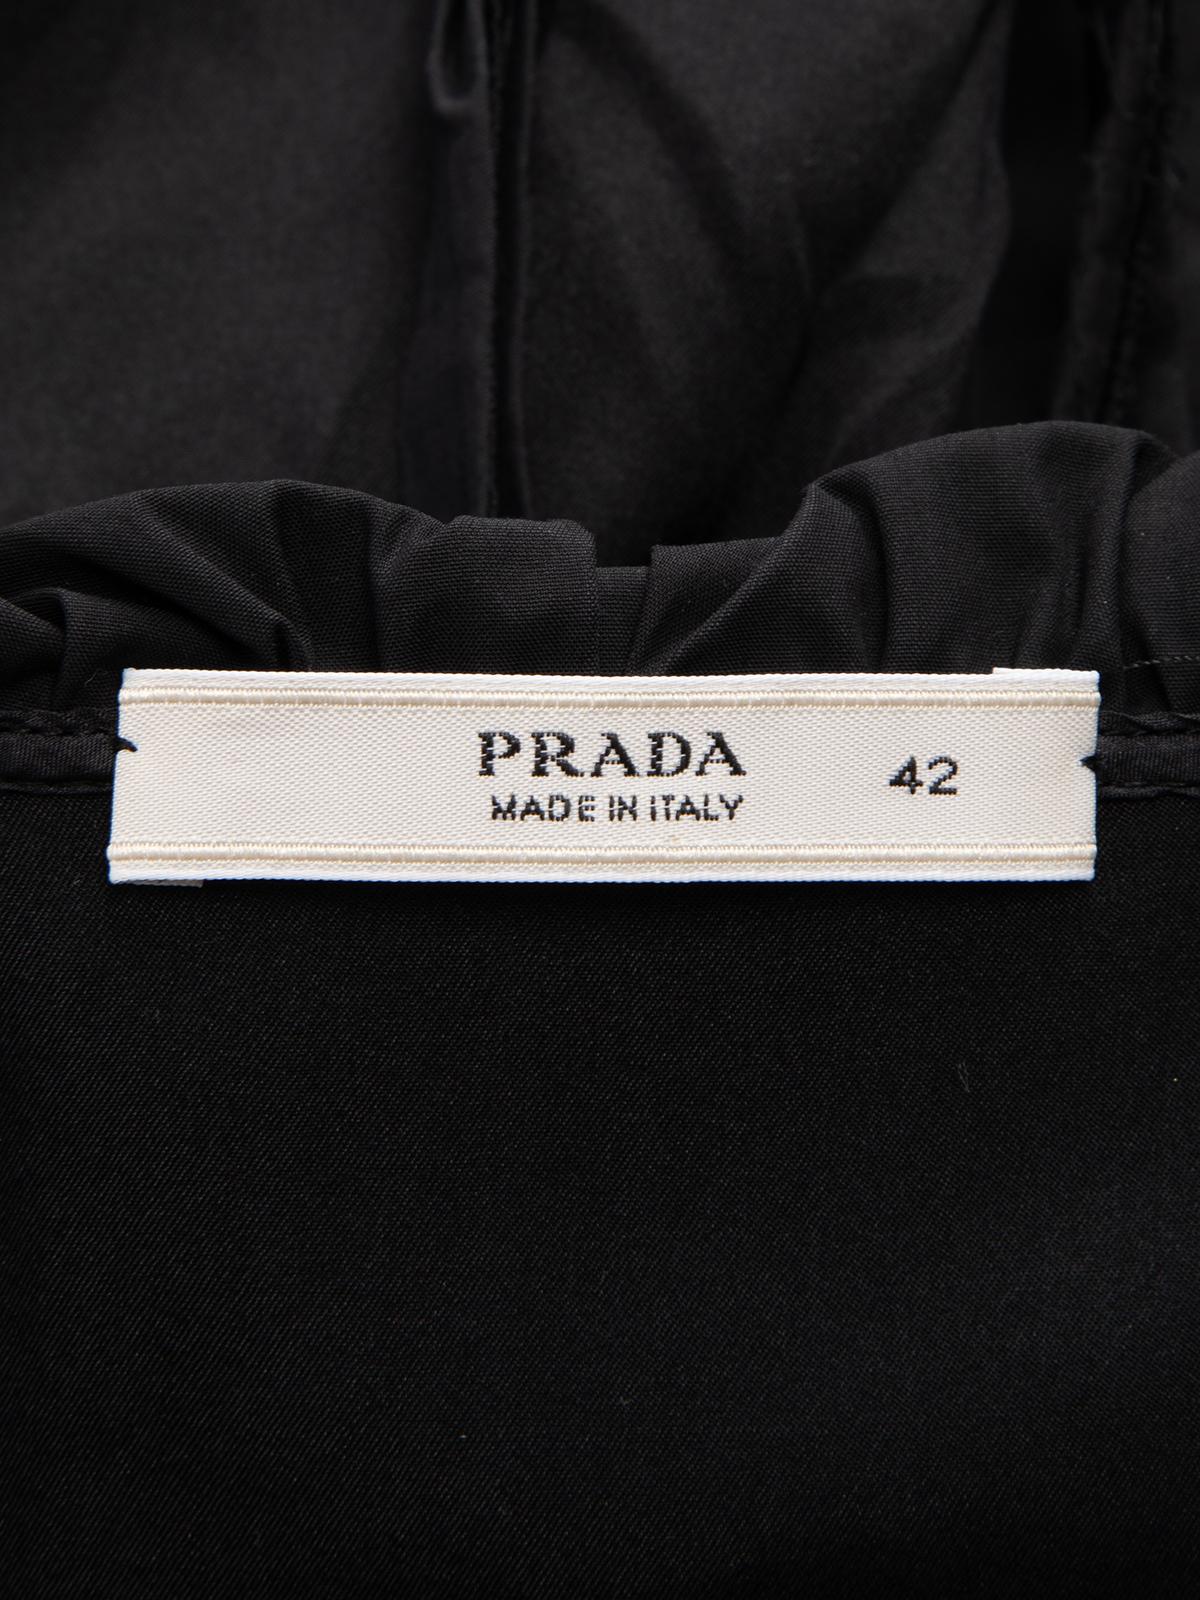 Prada - Robe à col roulé noire pour femme - Pré-alloué 3